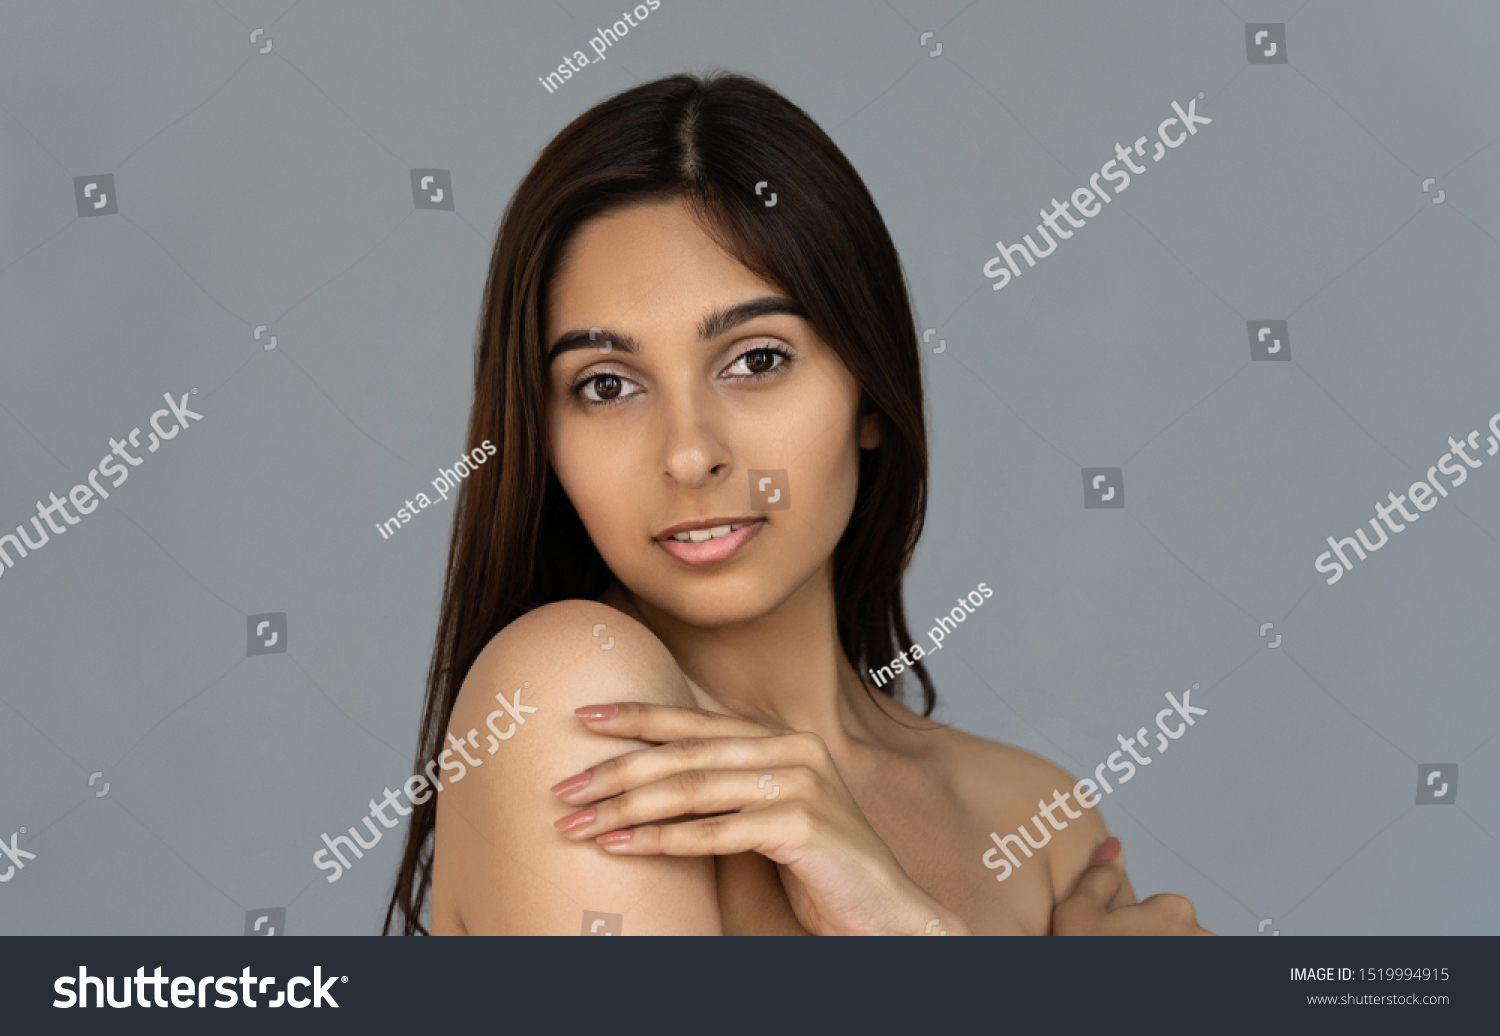 1379 Imágenes De Indian Model Naked Imágenes Fotos Y Vectores De Stock Shutterstock 5652